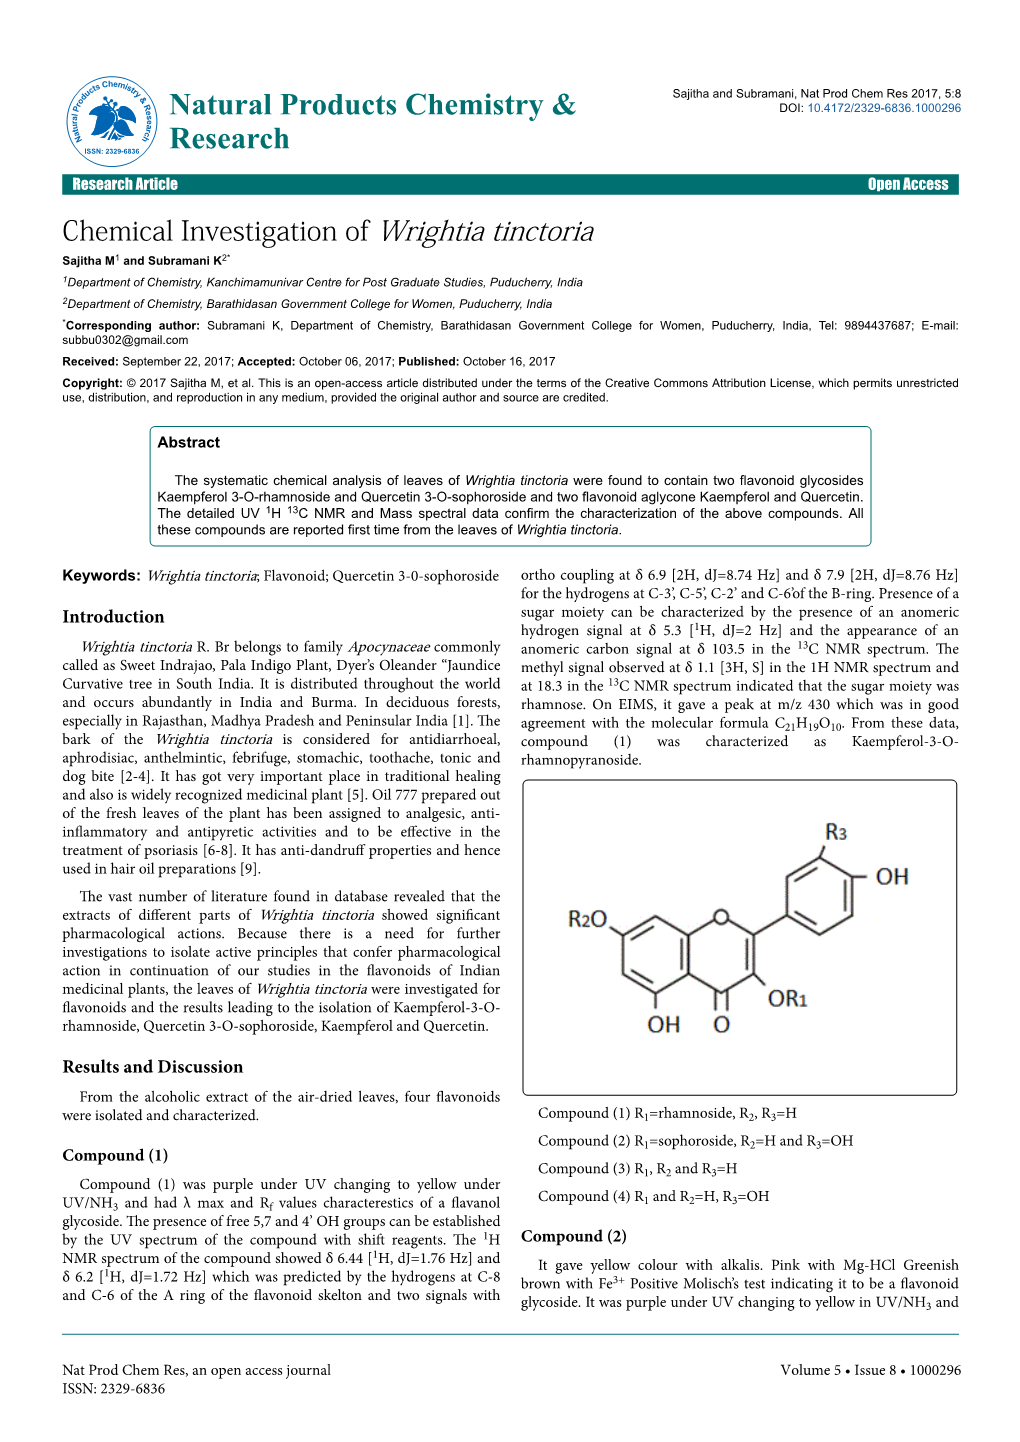 Chemical Investigation of Wrightia Tinctoria